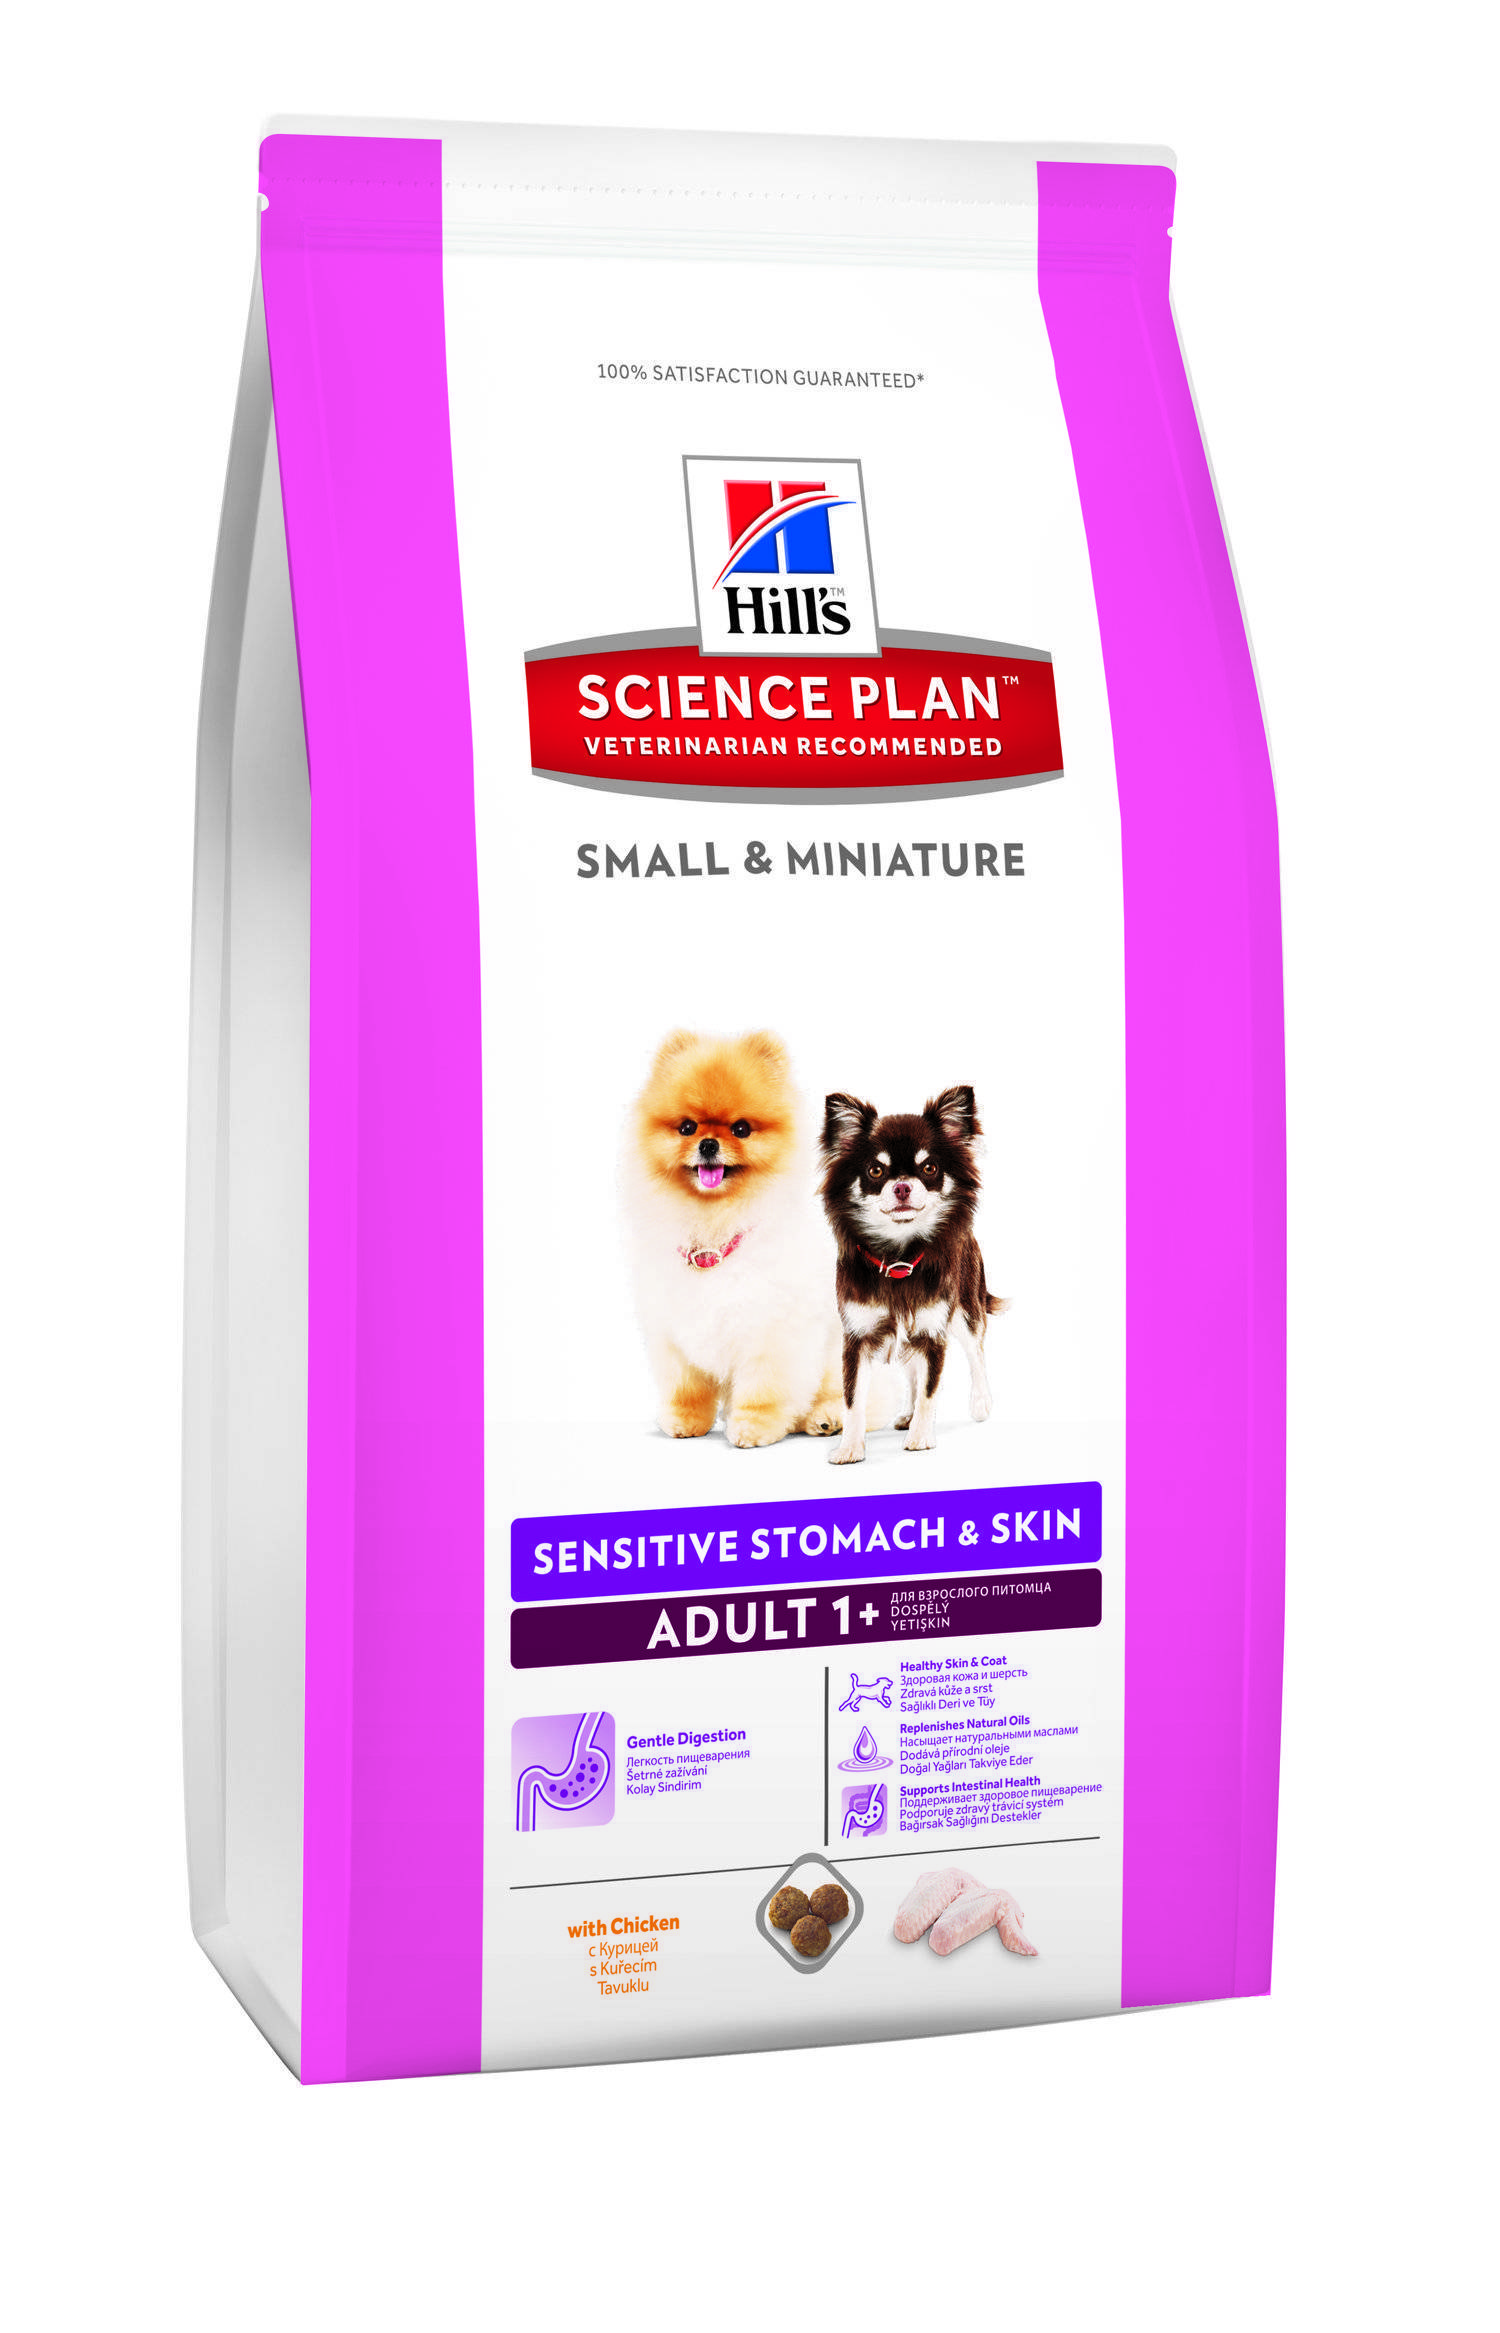 Купить сухой корм hills. Хиллс sensitive Stomach Skin для собак. Сухой корм Hill's Science Plan sensitive Stomach & Skin для собак. Корм Hills Science Plan для собак. Hills корм sensitive Stomach для собак.